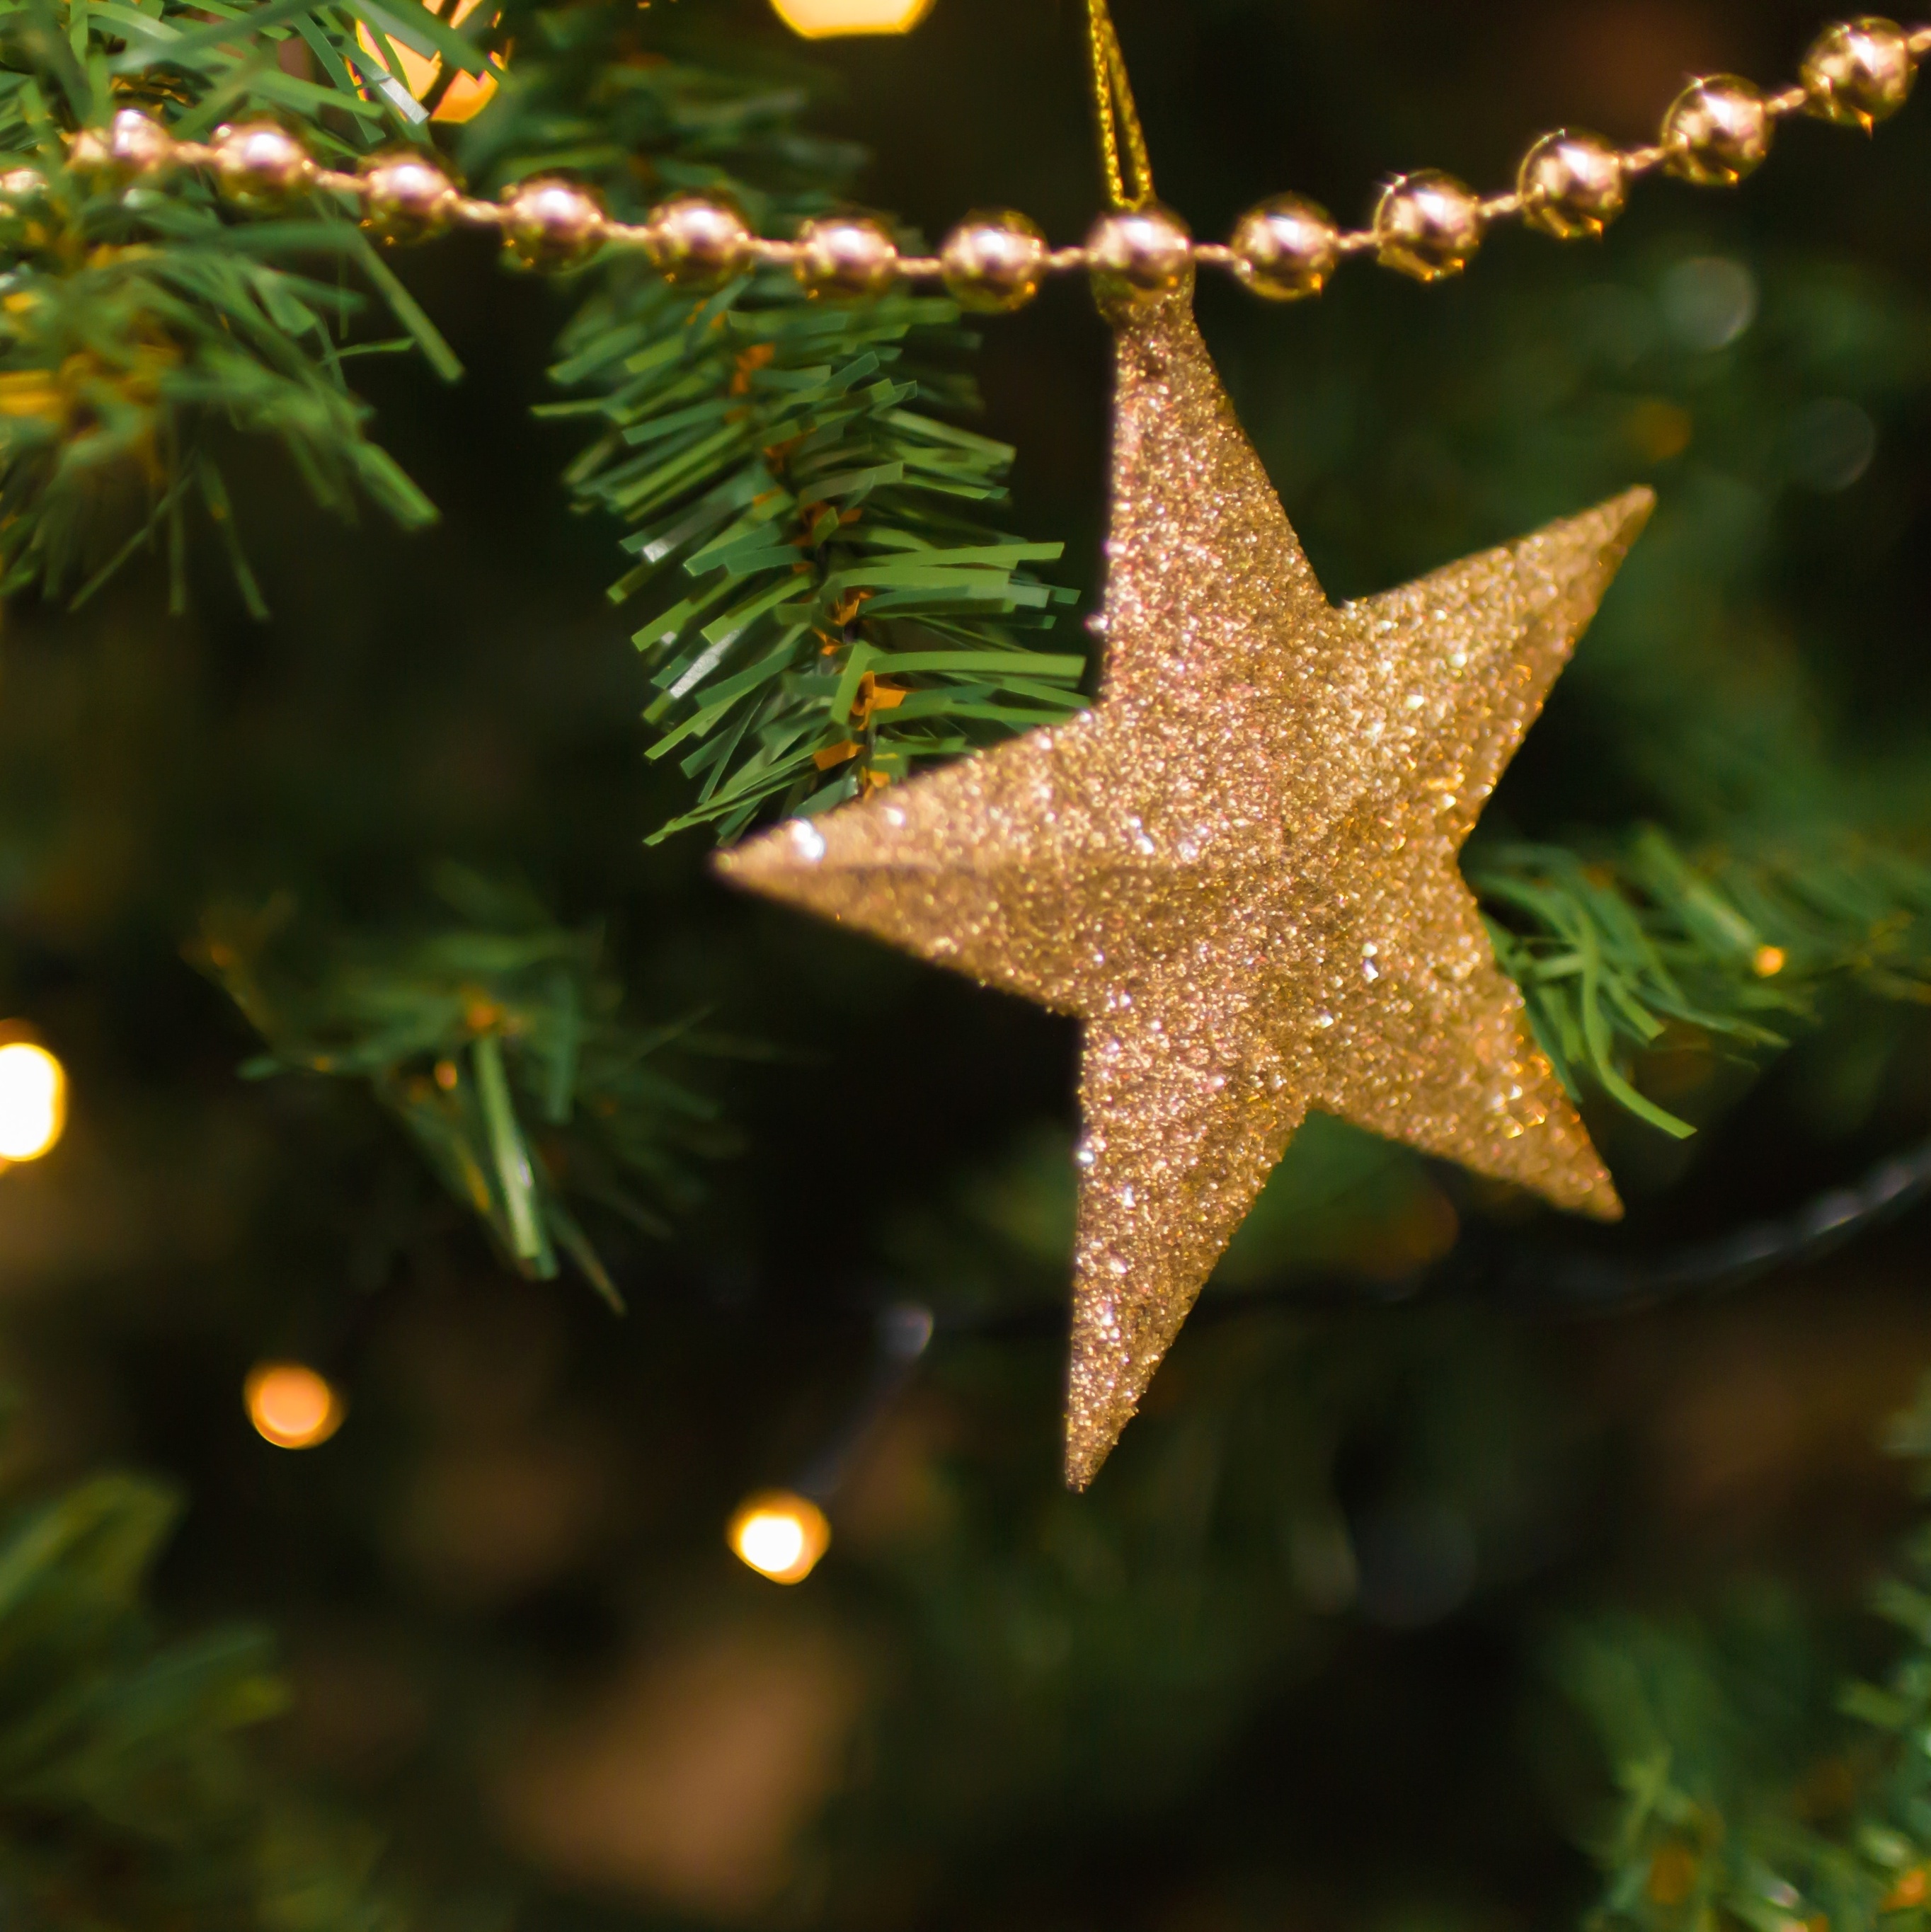 Vem que está chegando o Natal: conheça algumas dicas de decoração